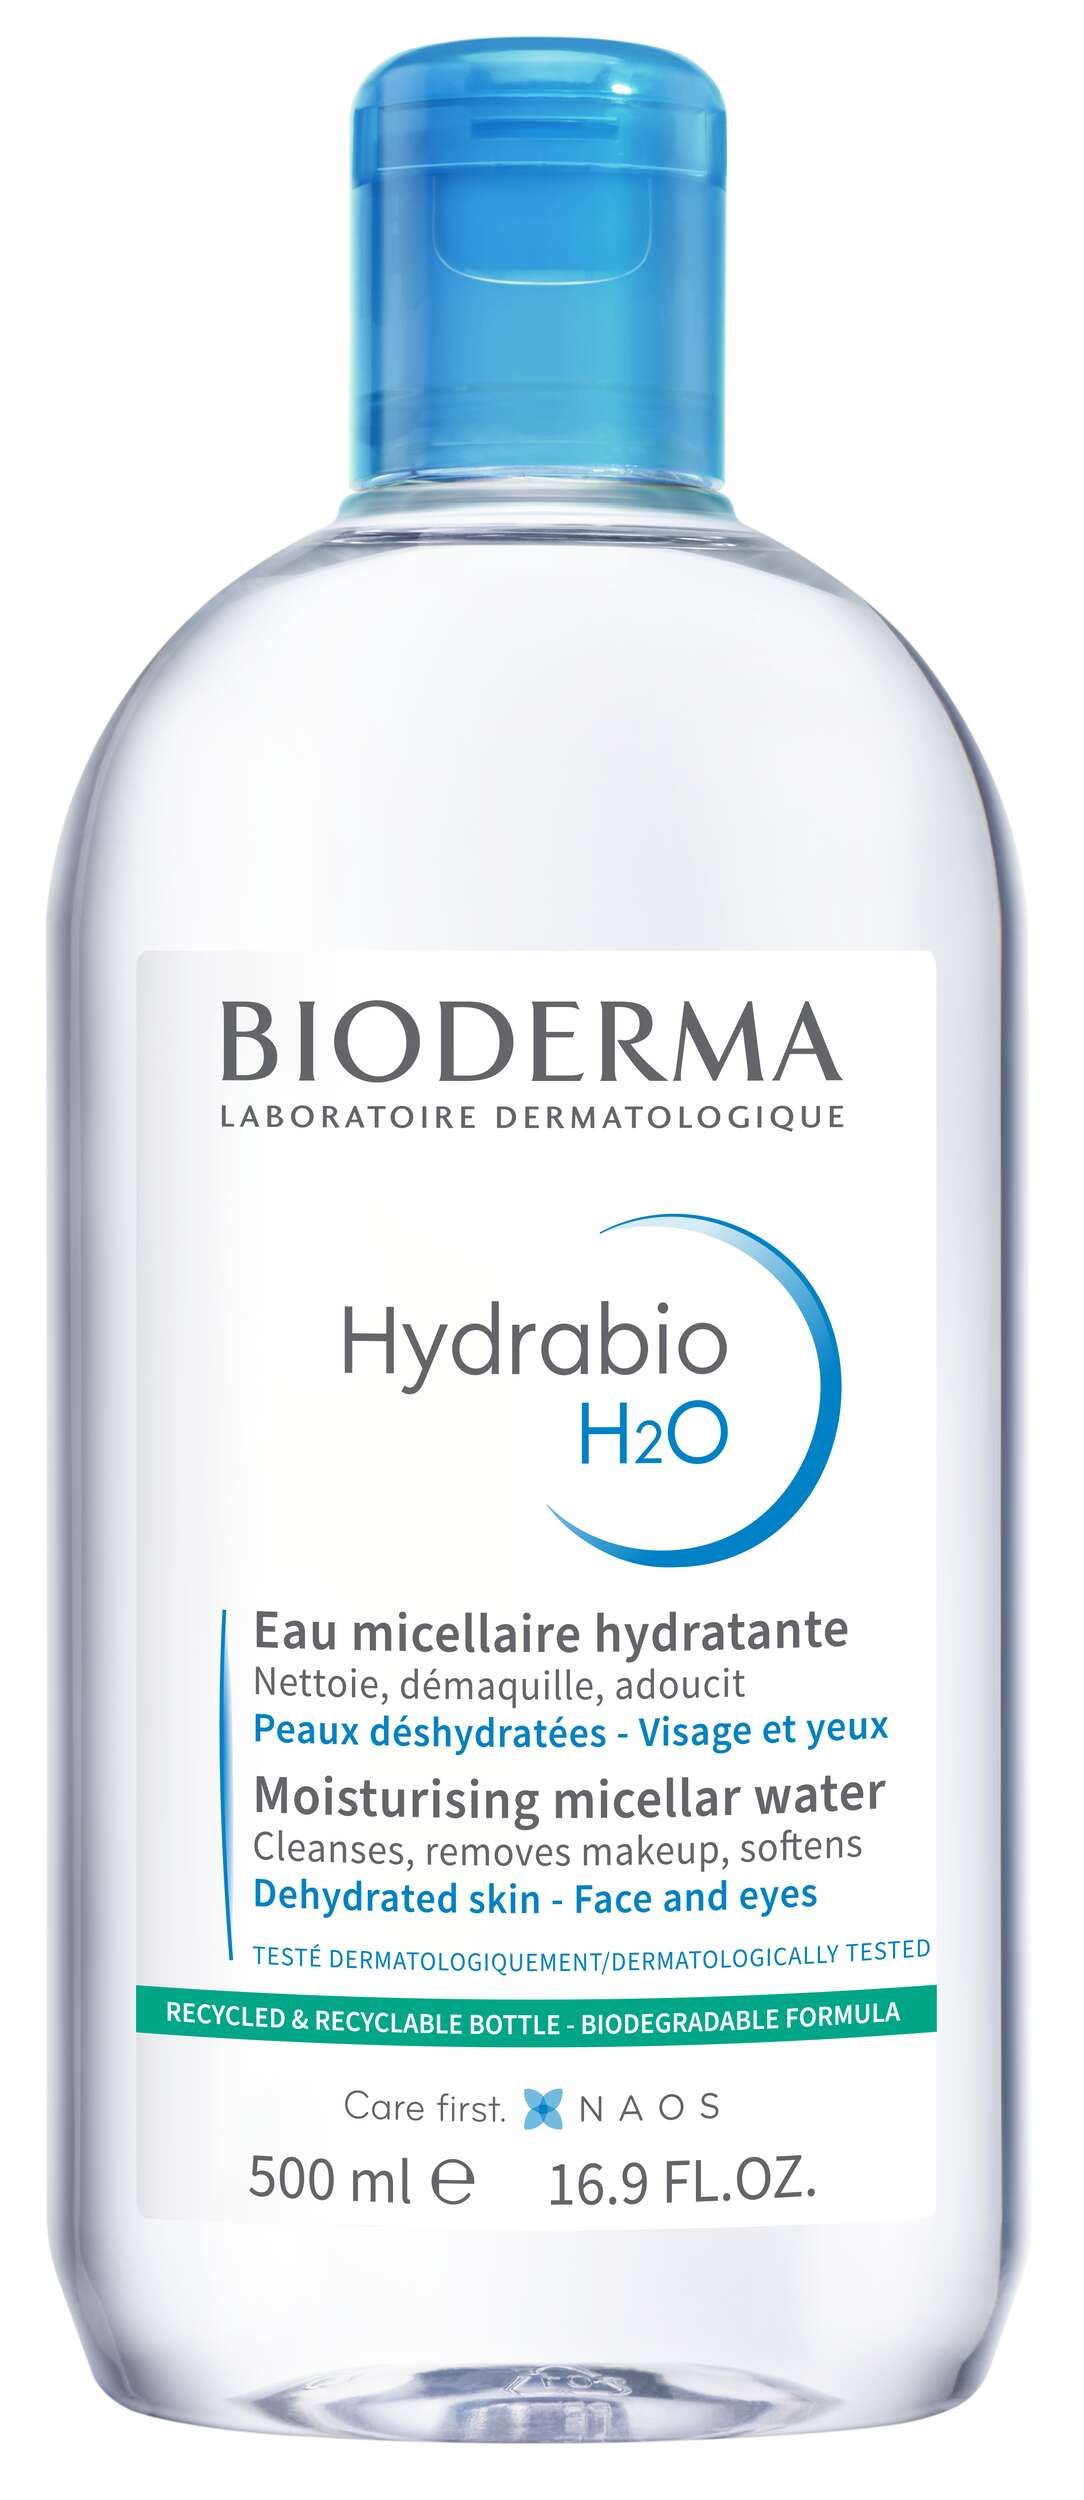 Bioderma Hydrabio H2o Acqua Micellare Struccante Idratante Pelle Disidratata 500ml